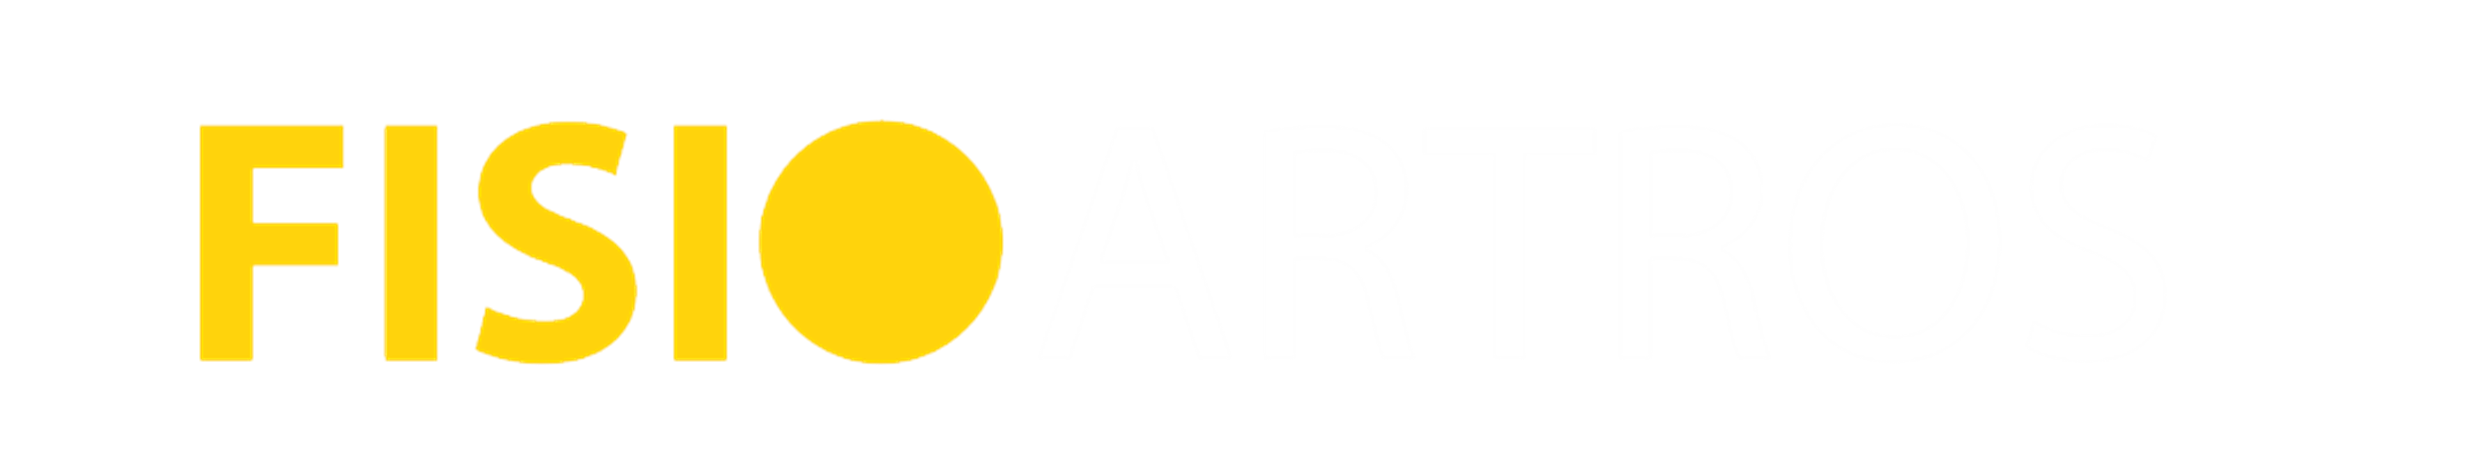 logo-artros